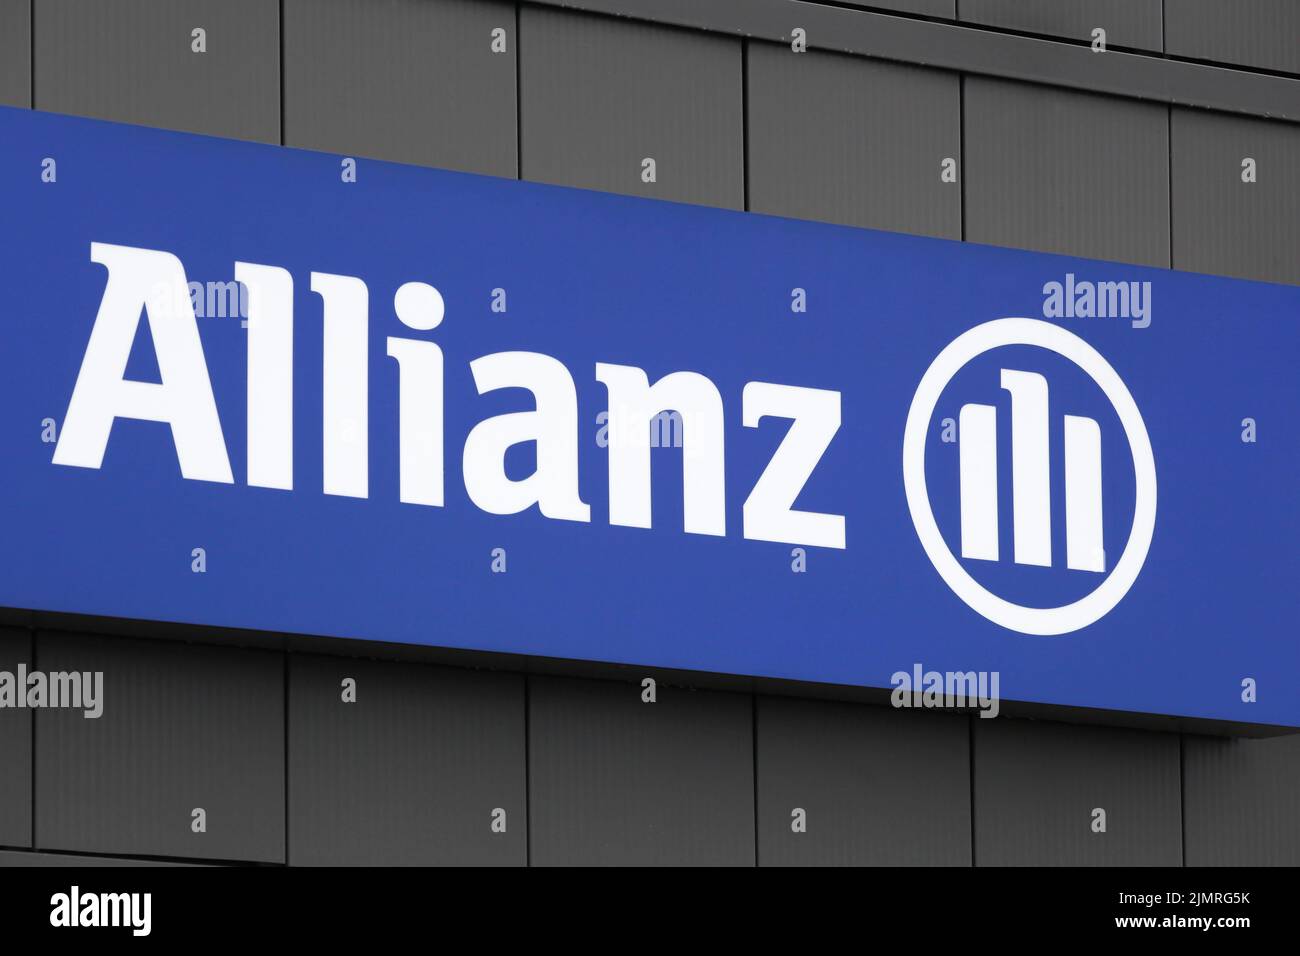 Bourg, Francia - 26 de septiembre de 2020: Allianz signo en una pared. Allianz es una empresa europea de servicios financieros con sede en Munich, Alemania Foto de stock